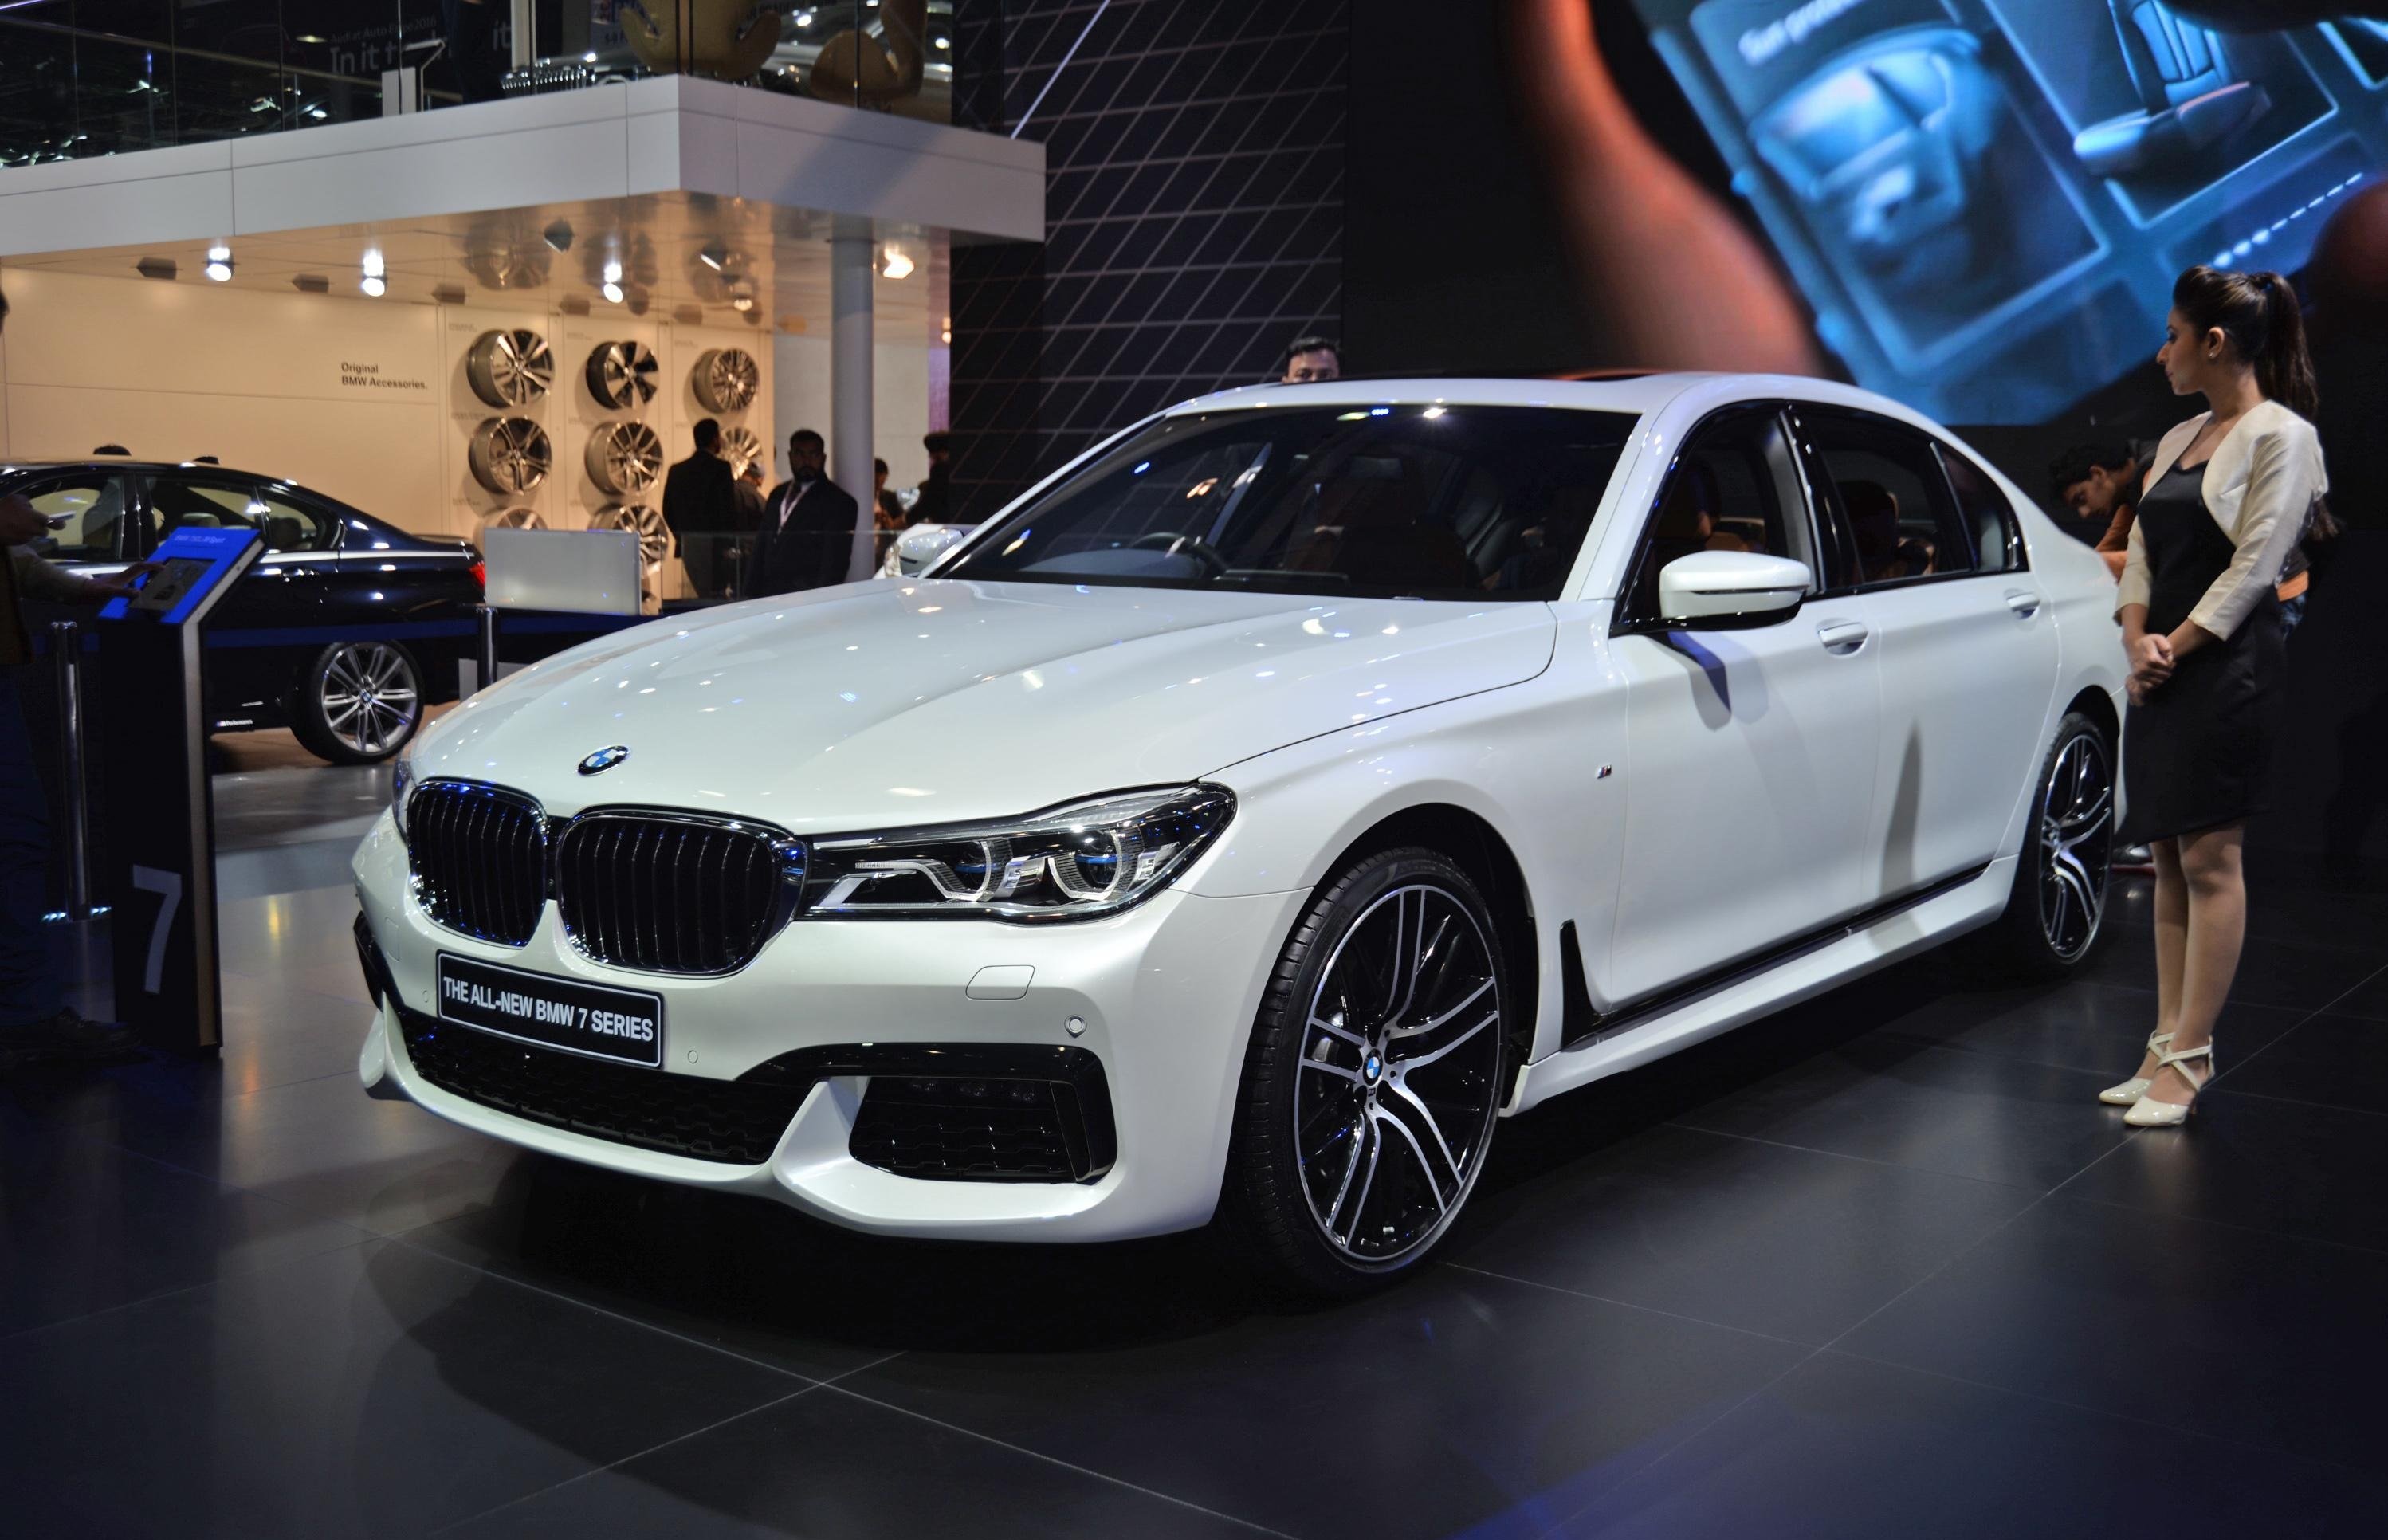 BMW временно отказался от выпуска седана 7 серии